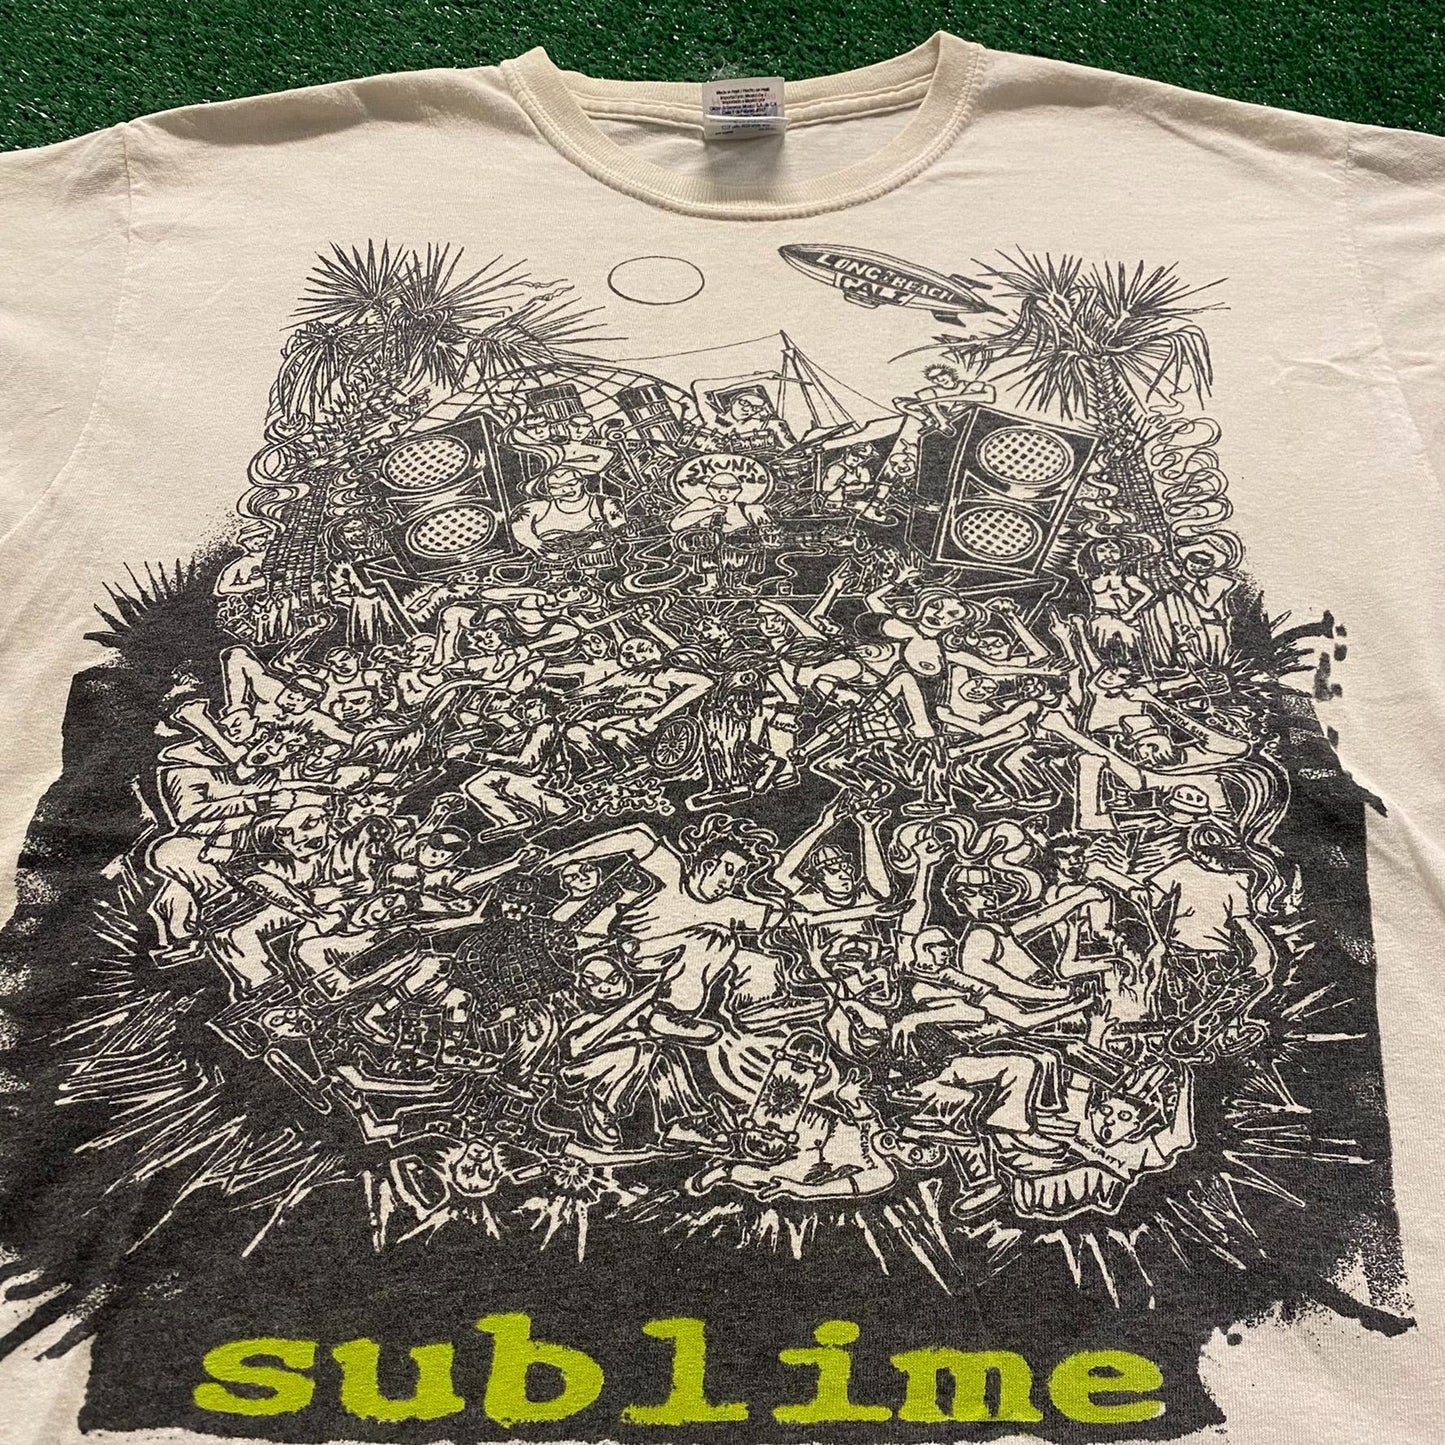 Sublime Mosh Pit Vintage Punk Band T-Shirt